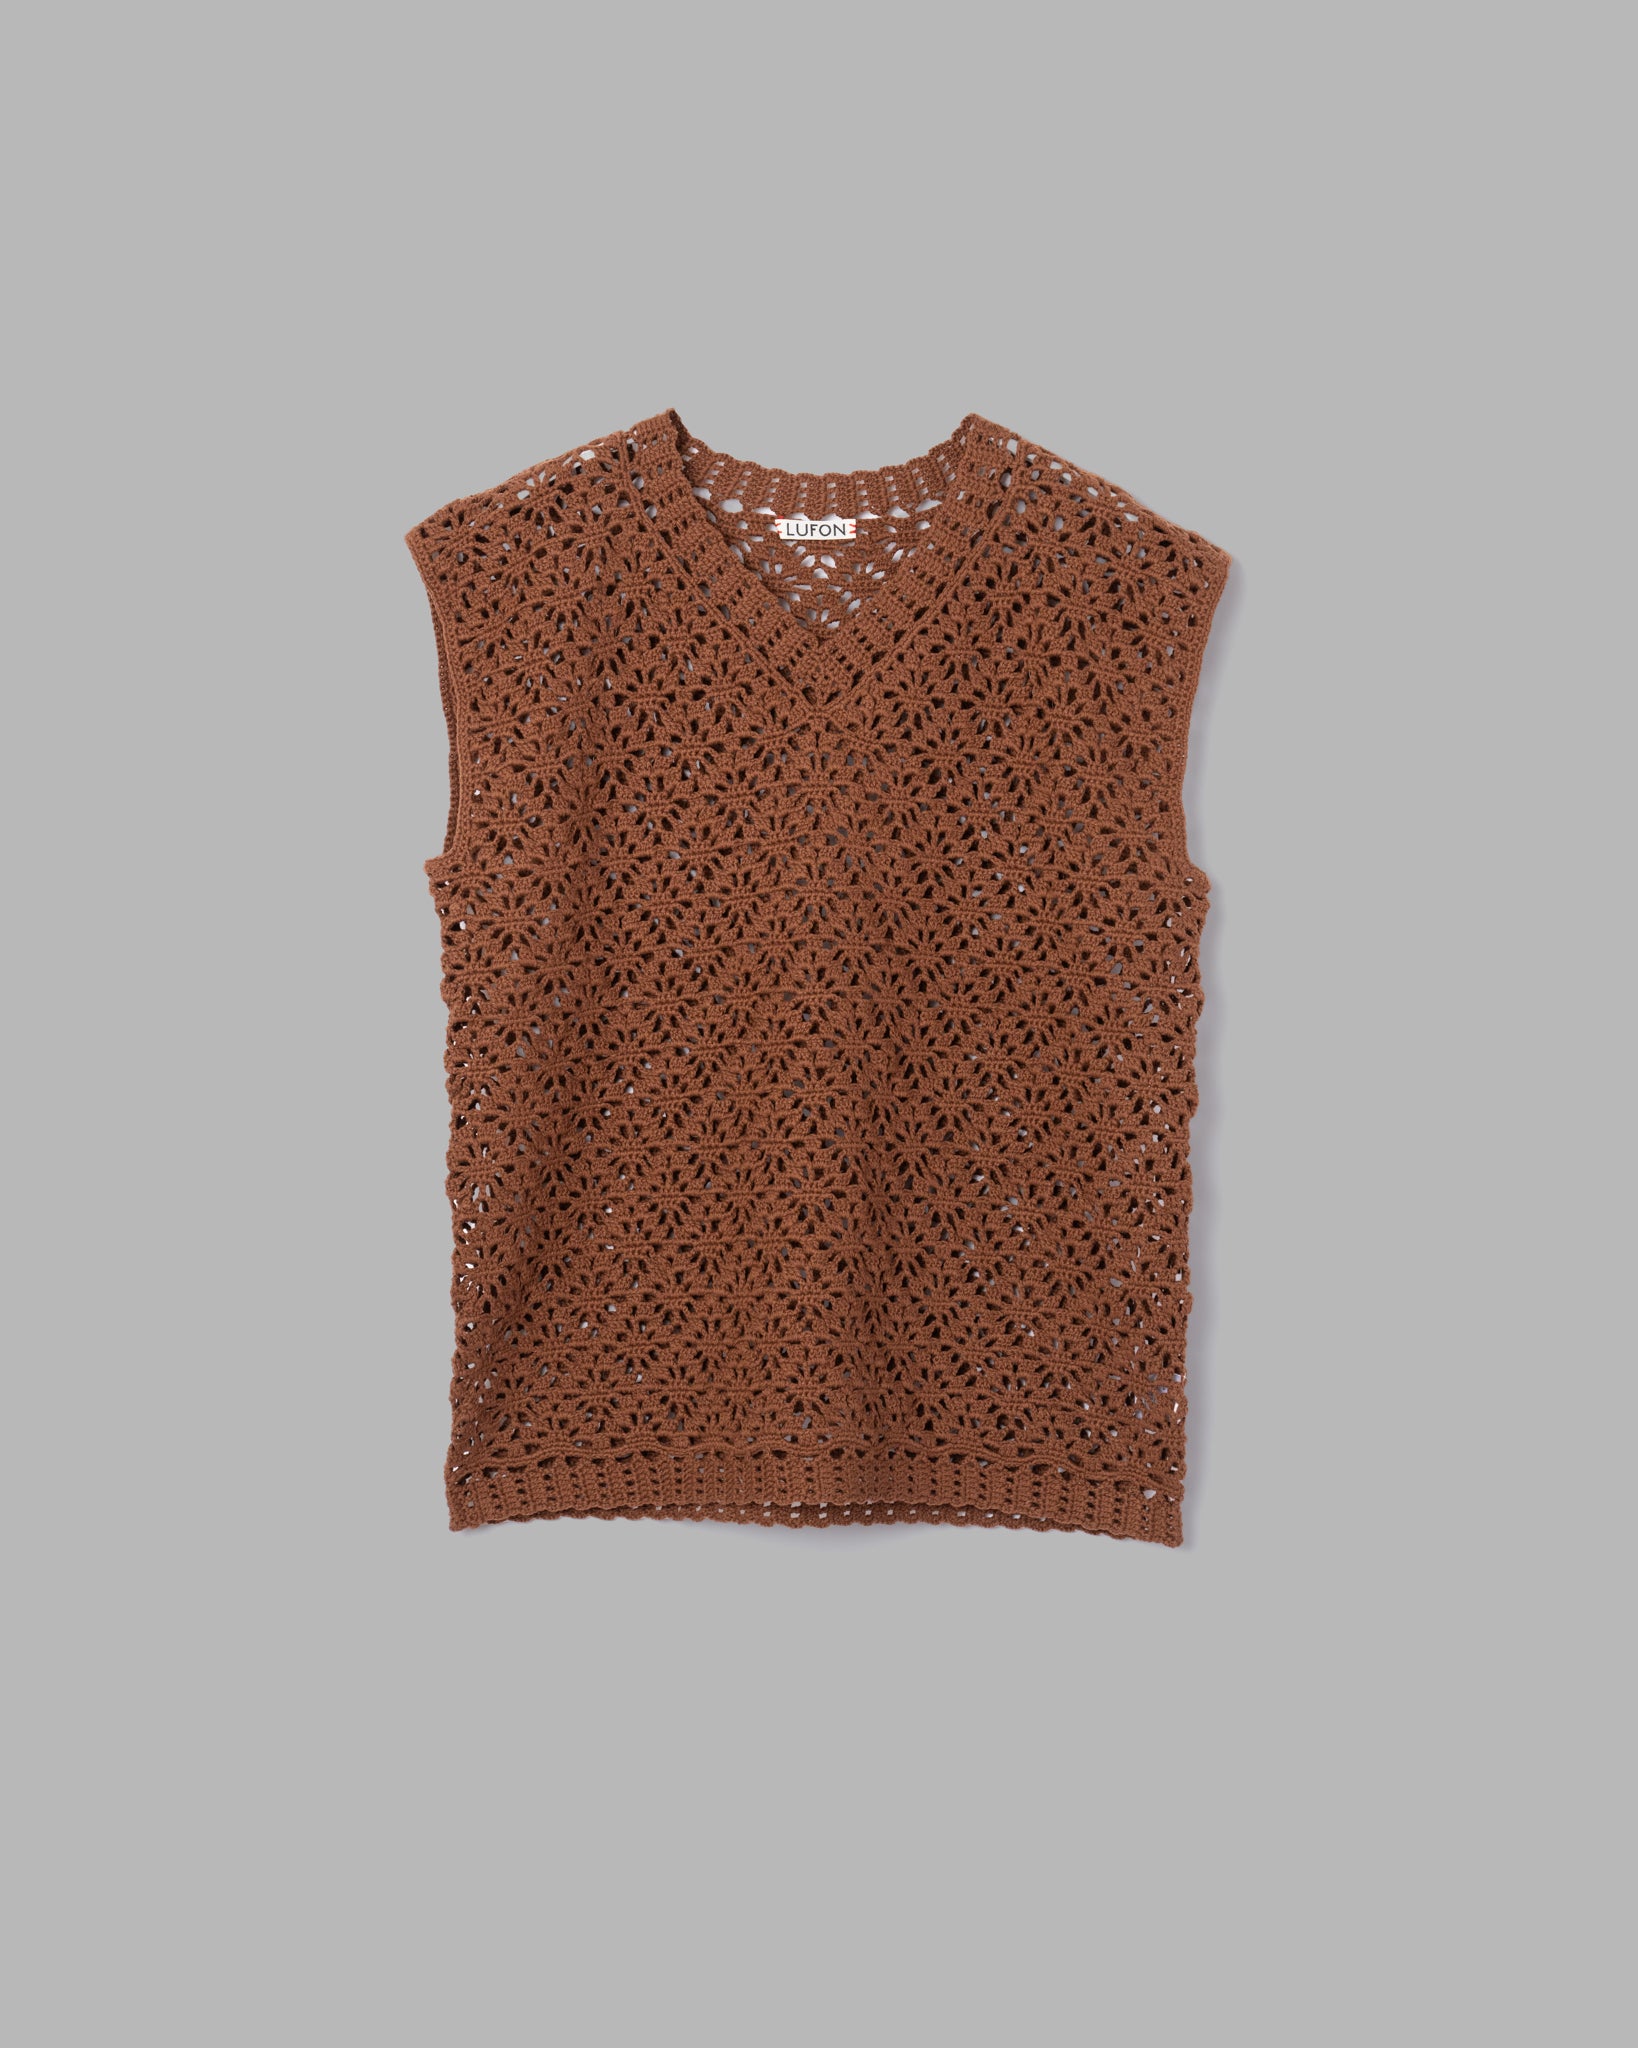 【2/1までの出品】hand knit vestこちらの値段で2月1日まで